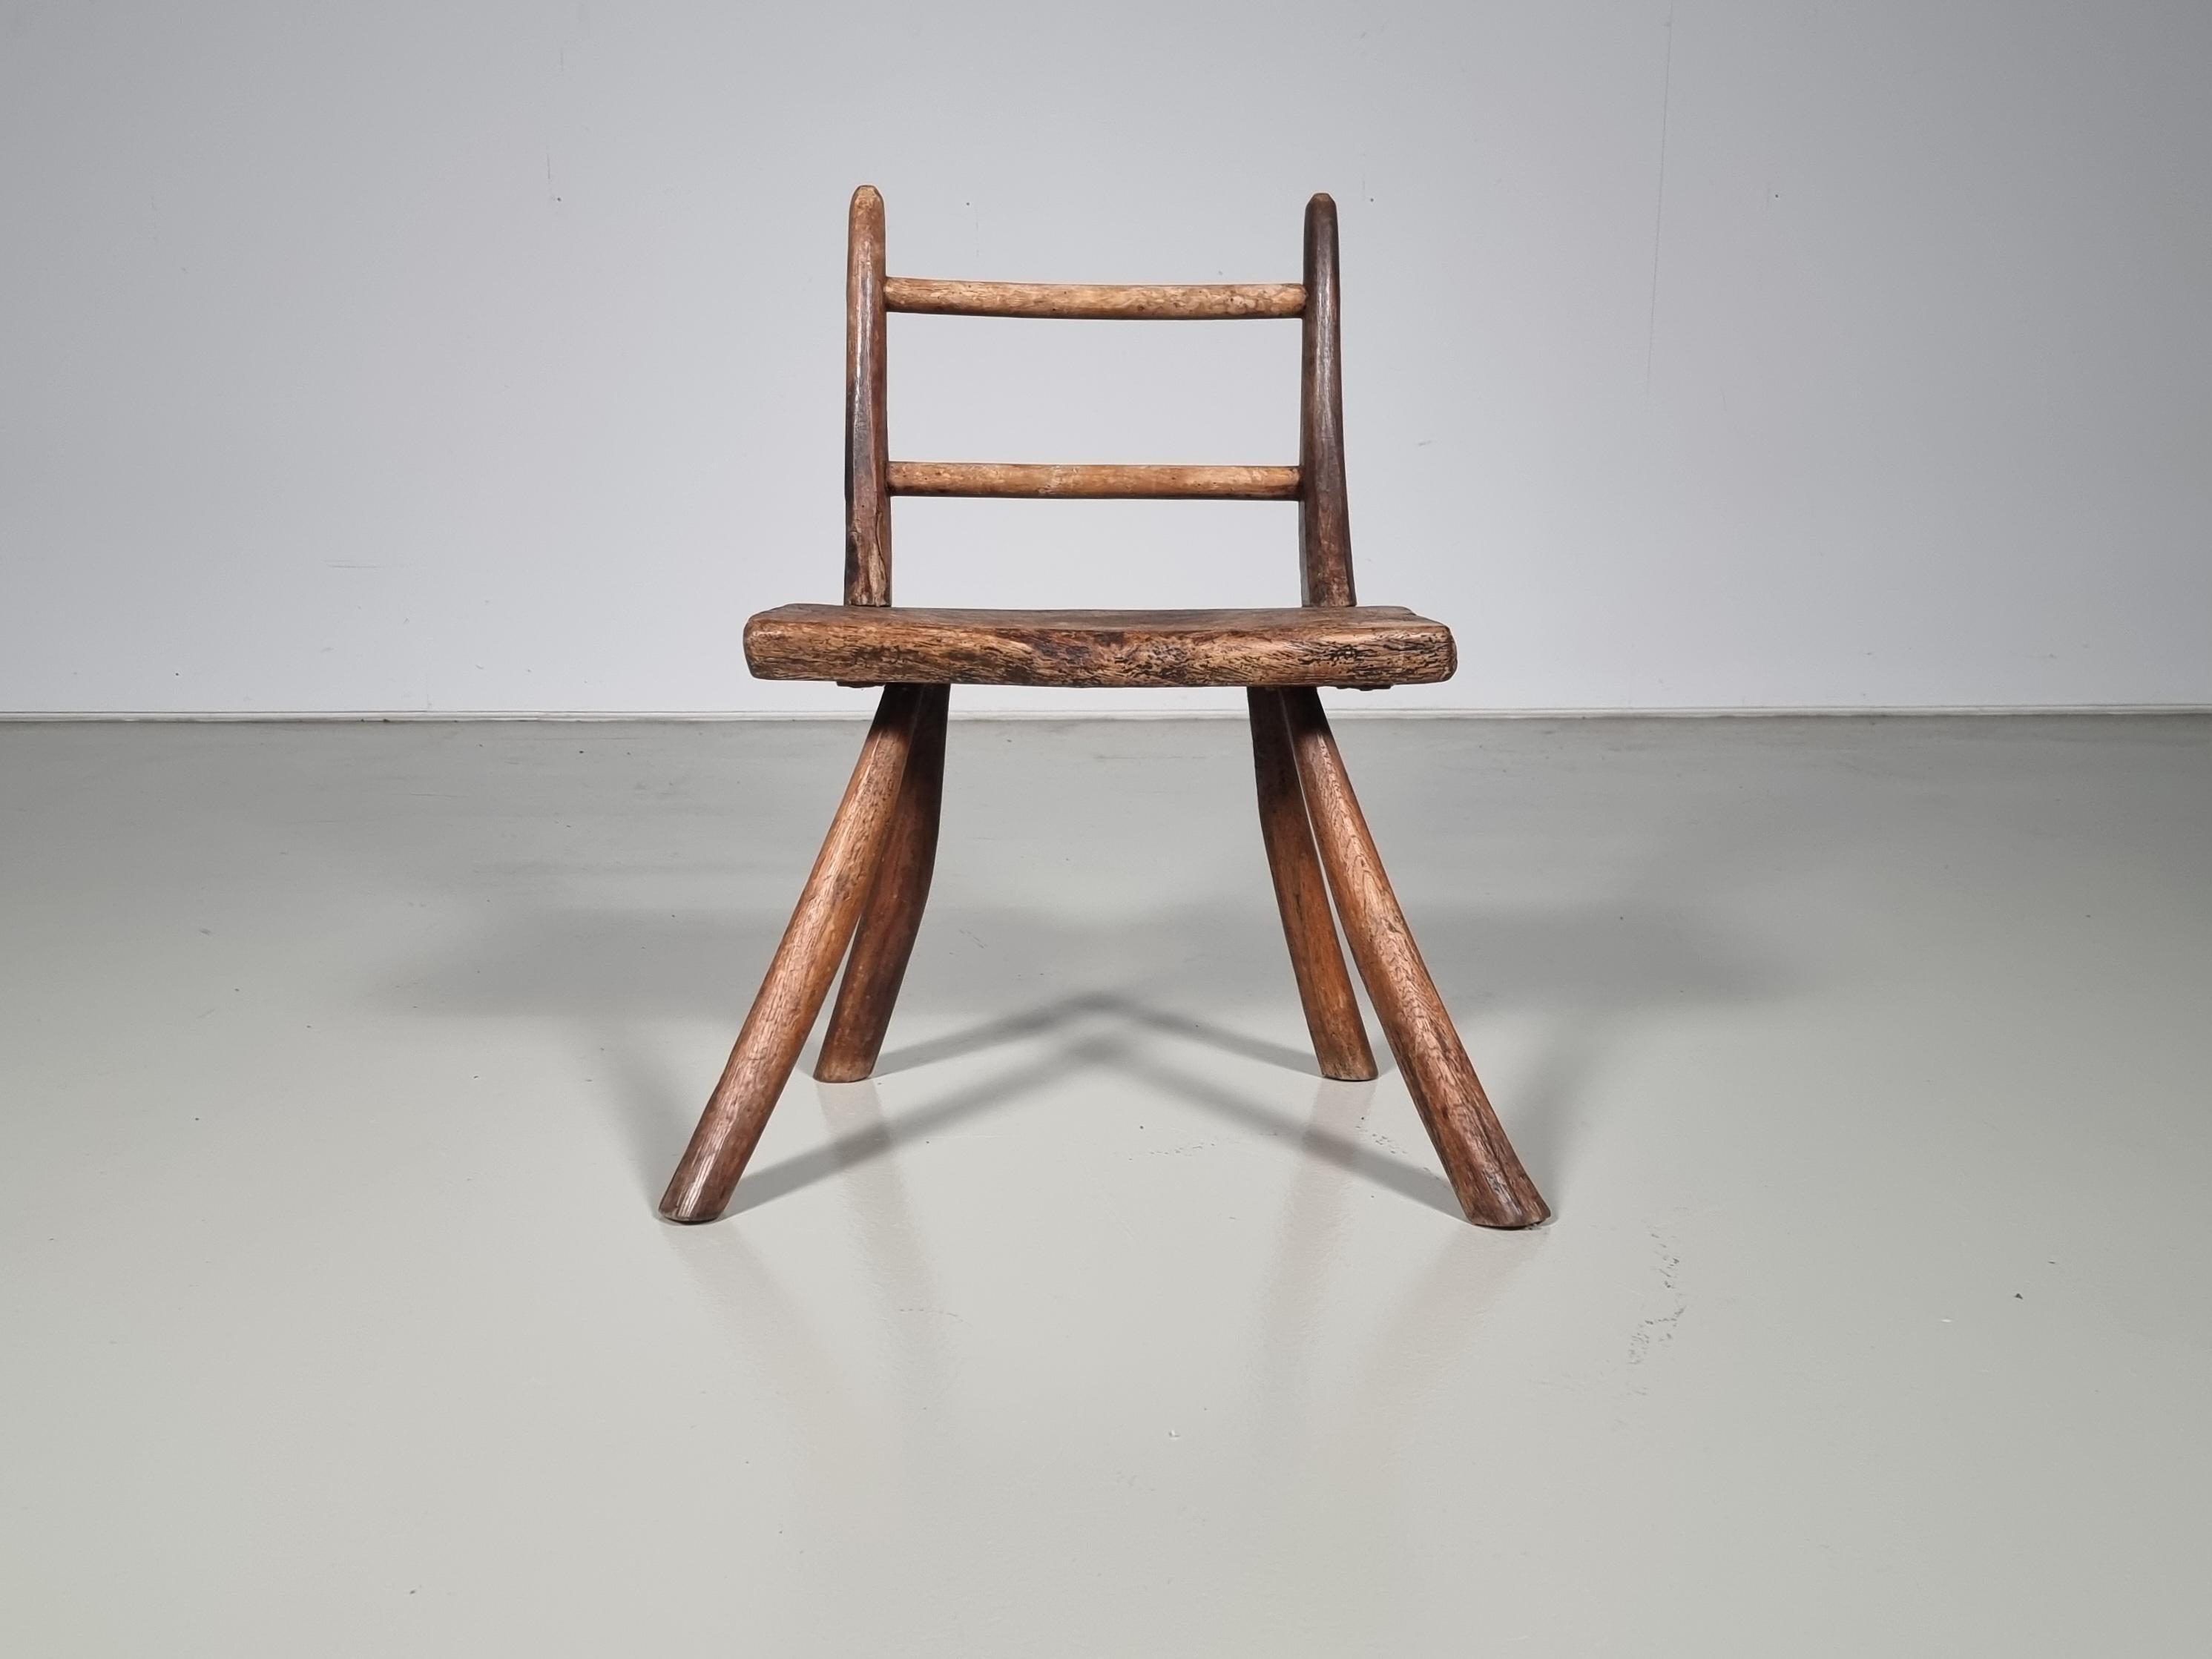 Rustikaler französischer Beistellstuhl des frühen 20. Jahrhunderts aus gebogenem dunklem Hartholz. Einfaches Design und einfache Konstruktion. Ein einzigartiger Stuhl, der sich perfekt für jeden Raum eignet, der auf der Suche nach einem Wabi